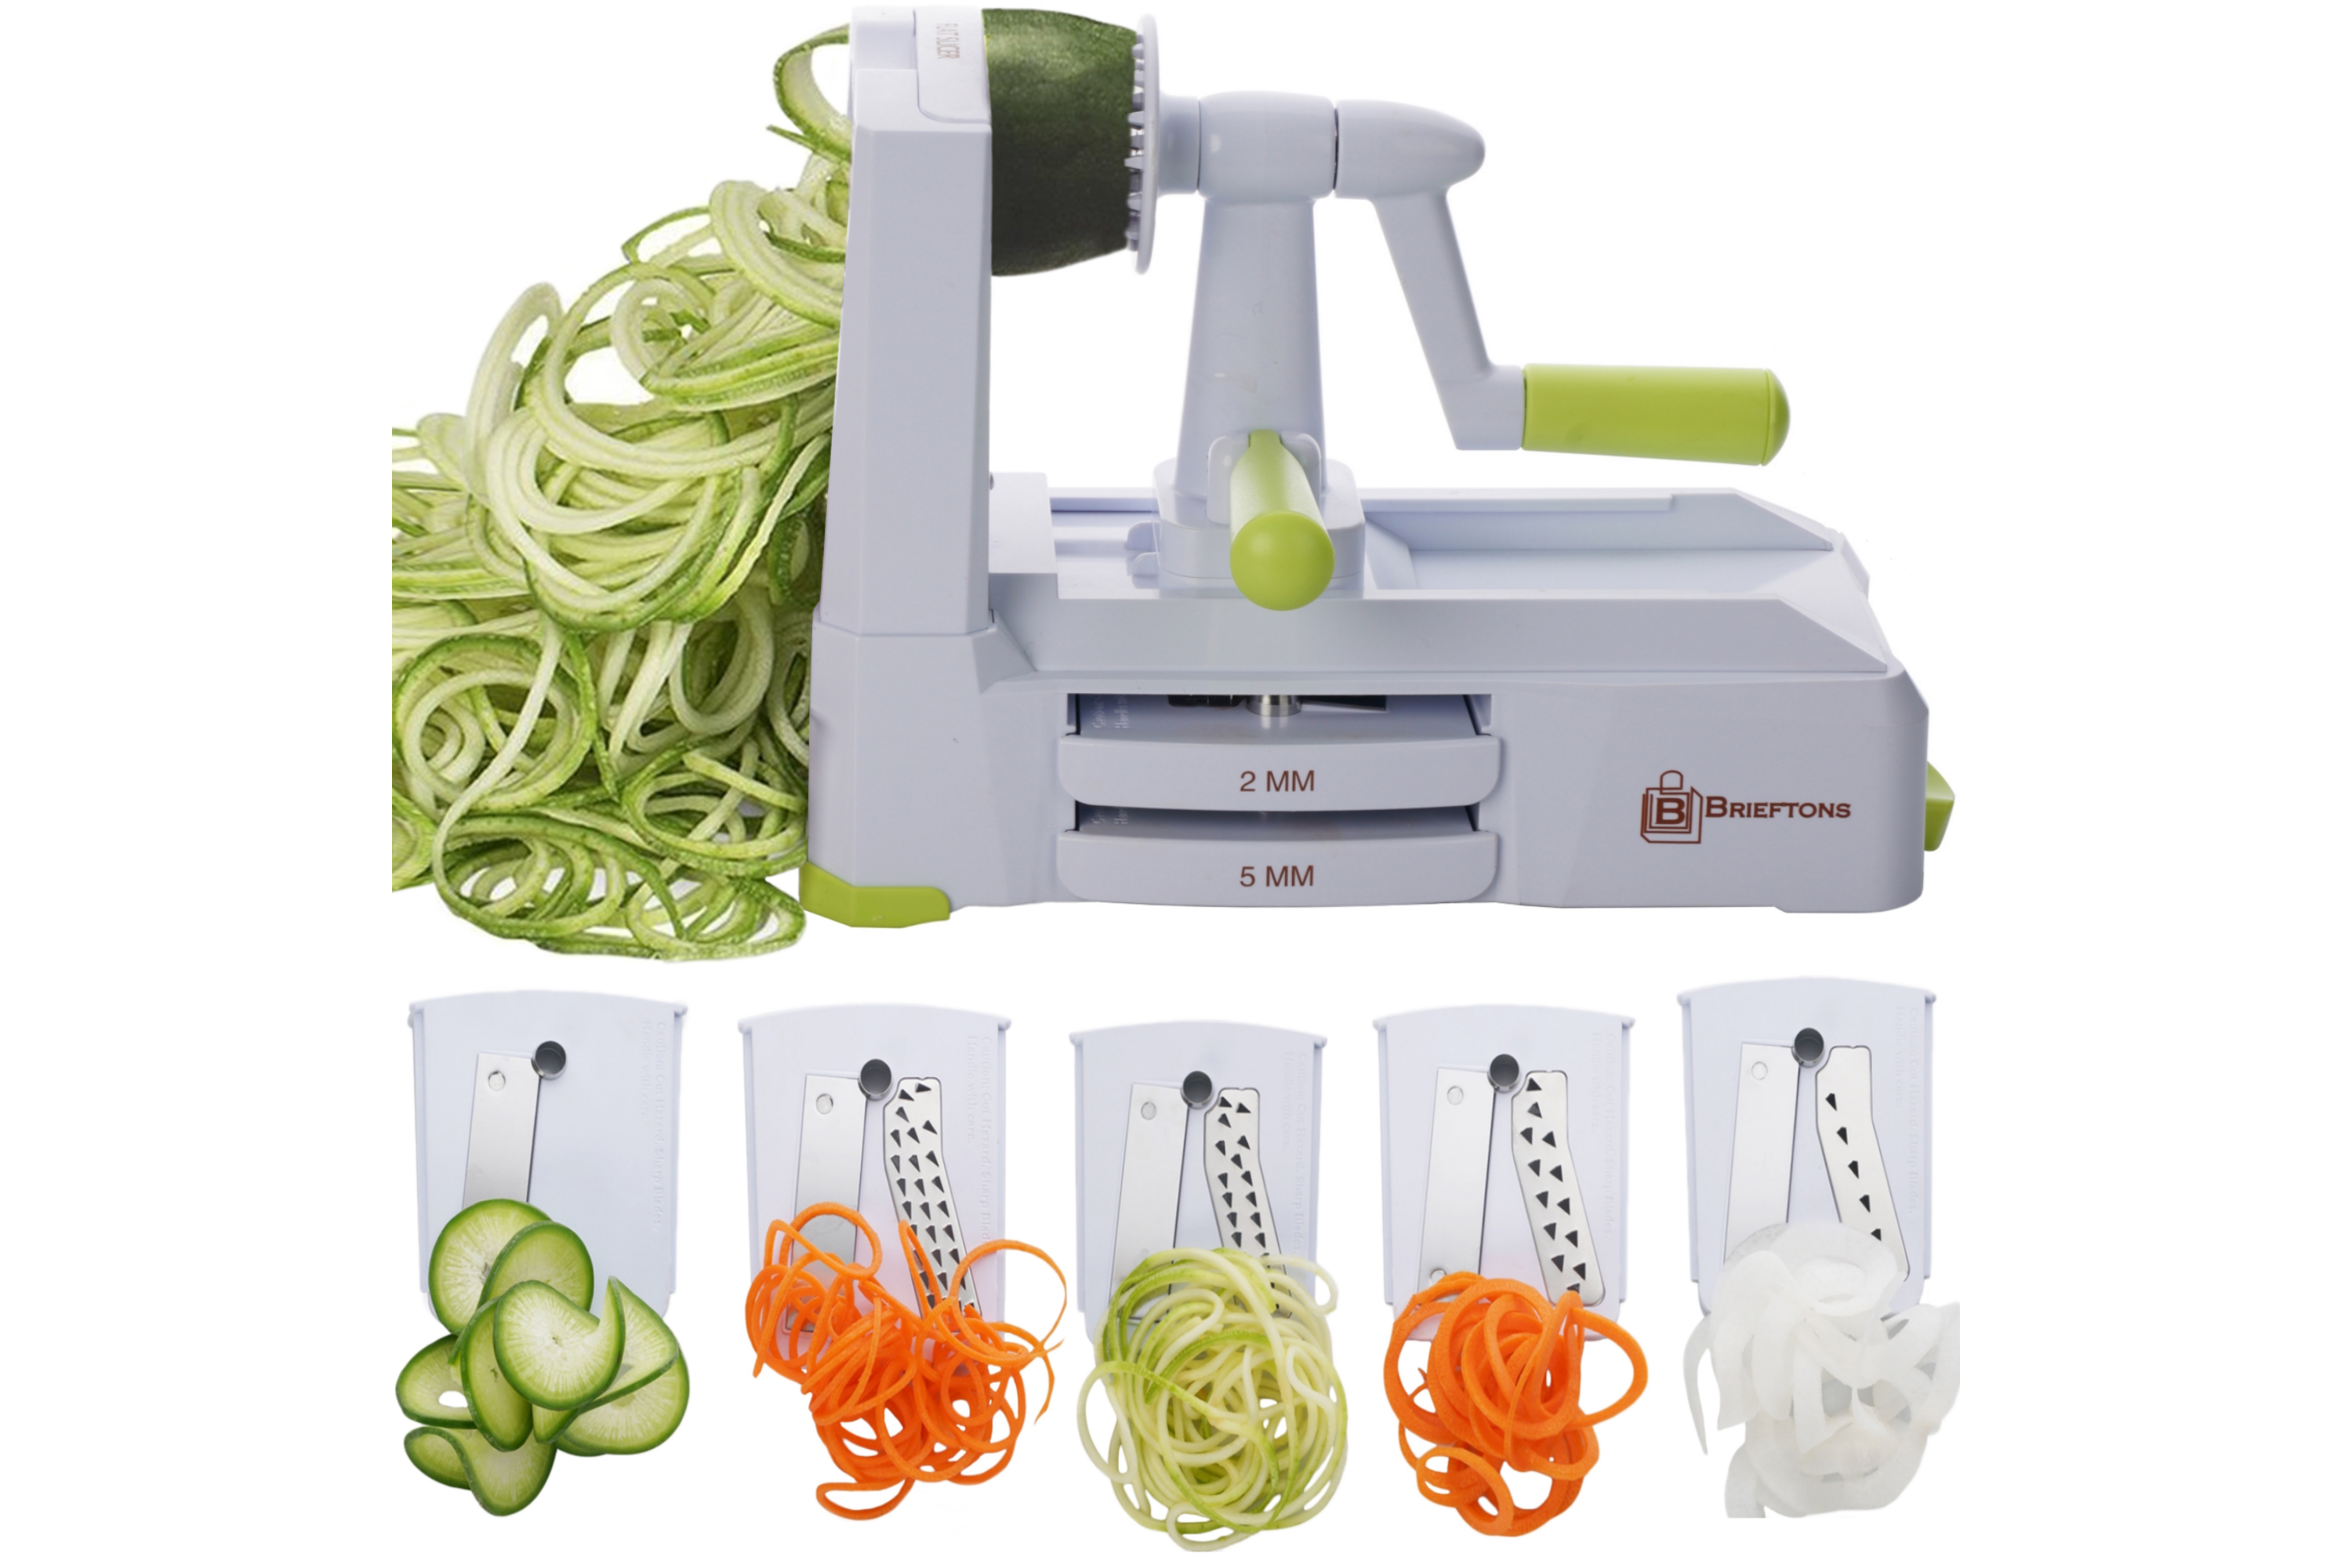 Fullstar Hand Held Vegetable Food Slicer with Adjusting Thickness Dial -  China Adjustable Mandoline Slicer and Handheld Slicer price